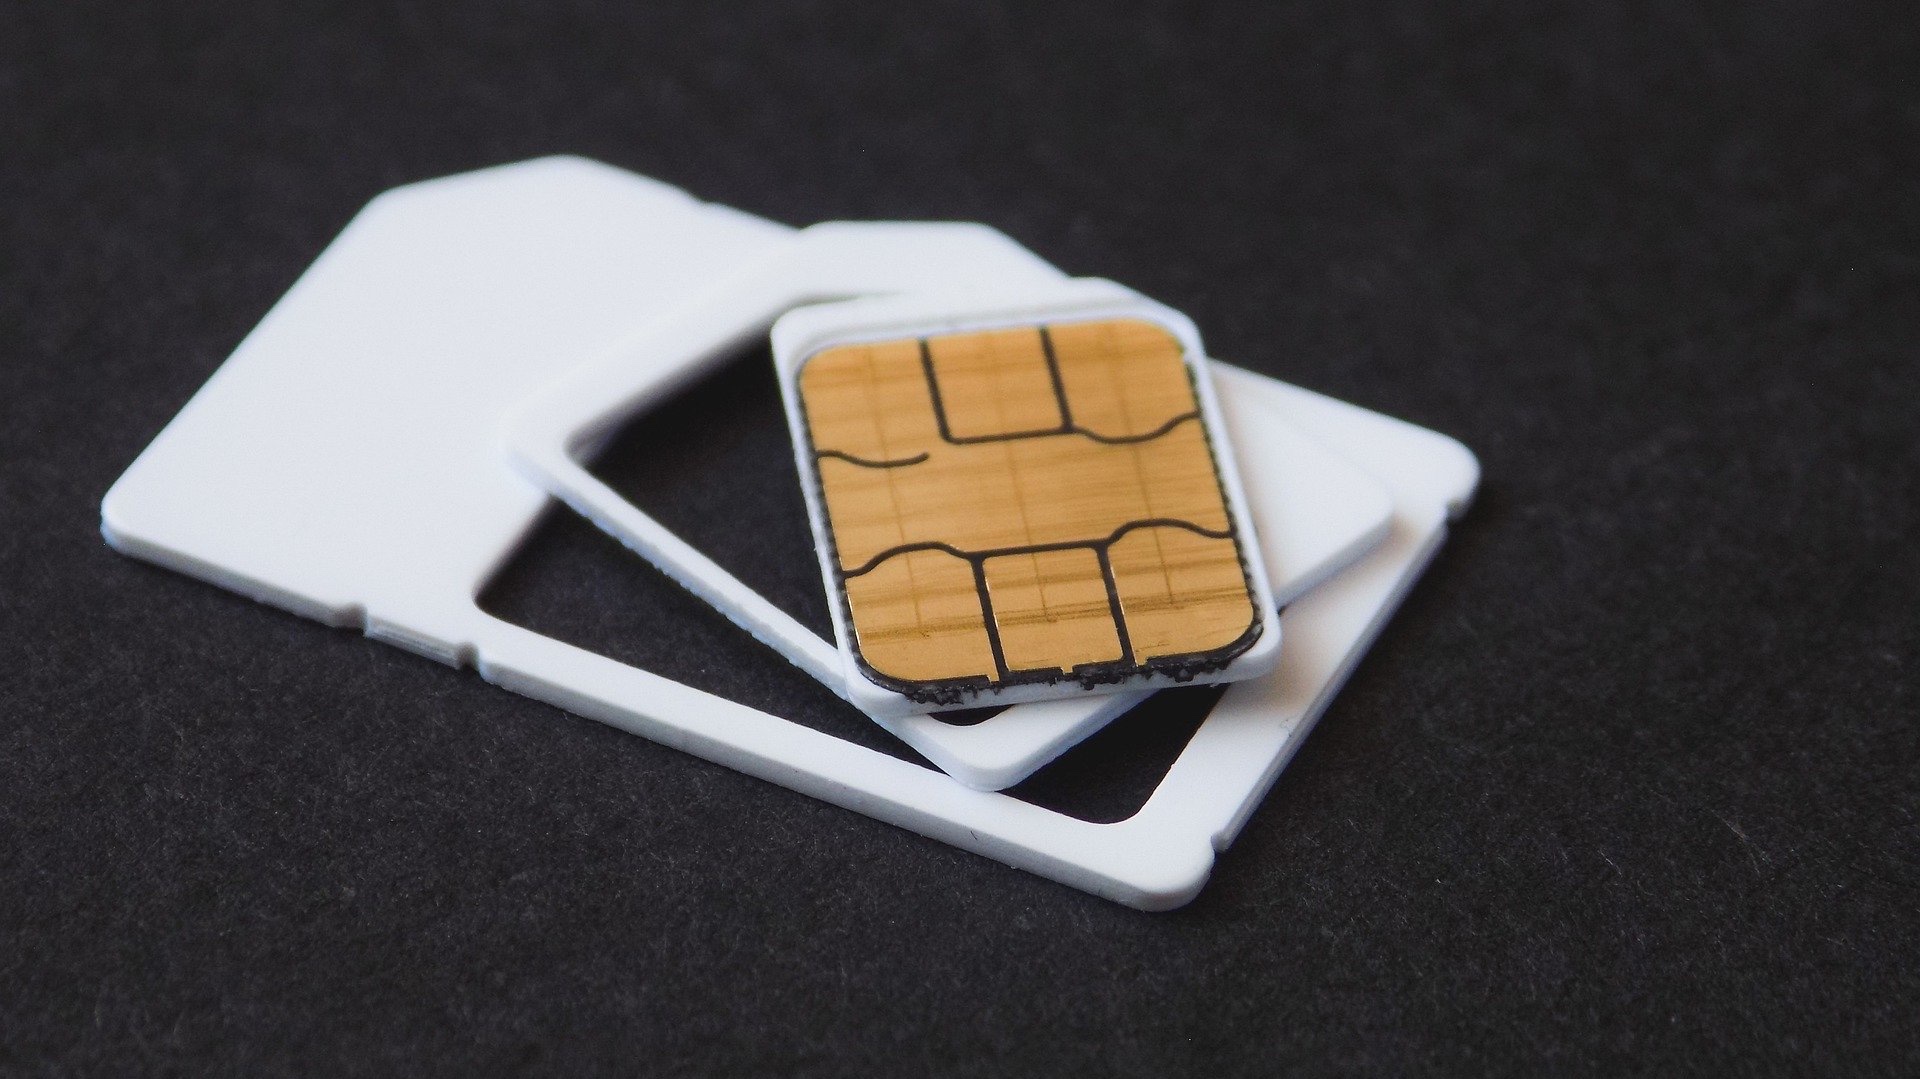 hidrógeno Regan distorsión How to unlock the SIM card on your iPhone | iMore